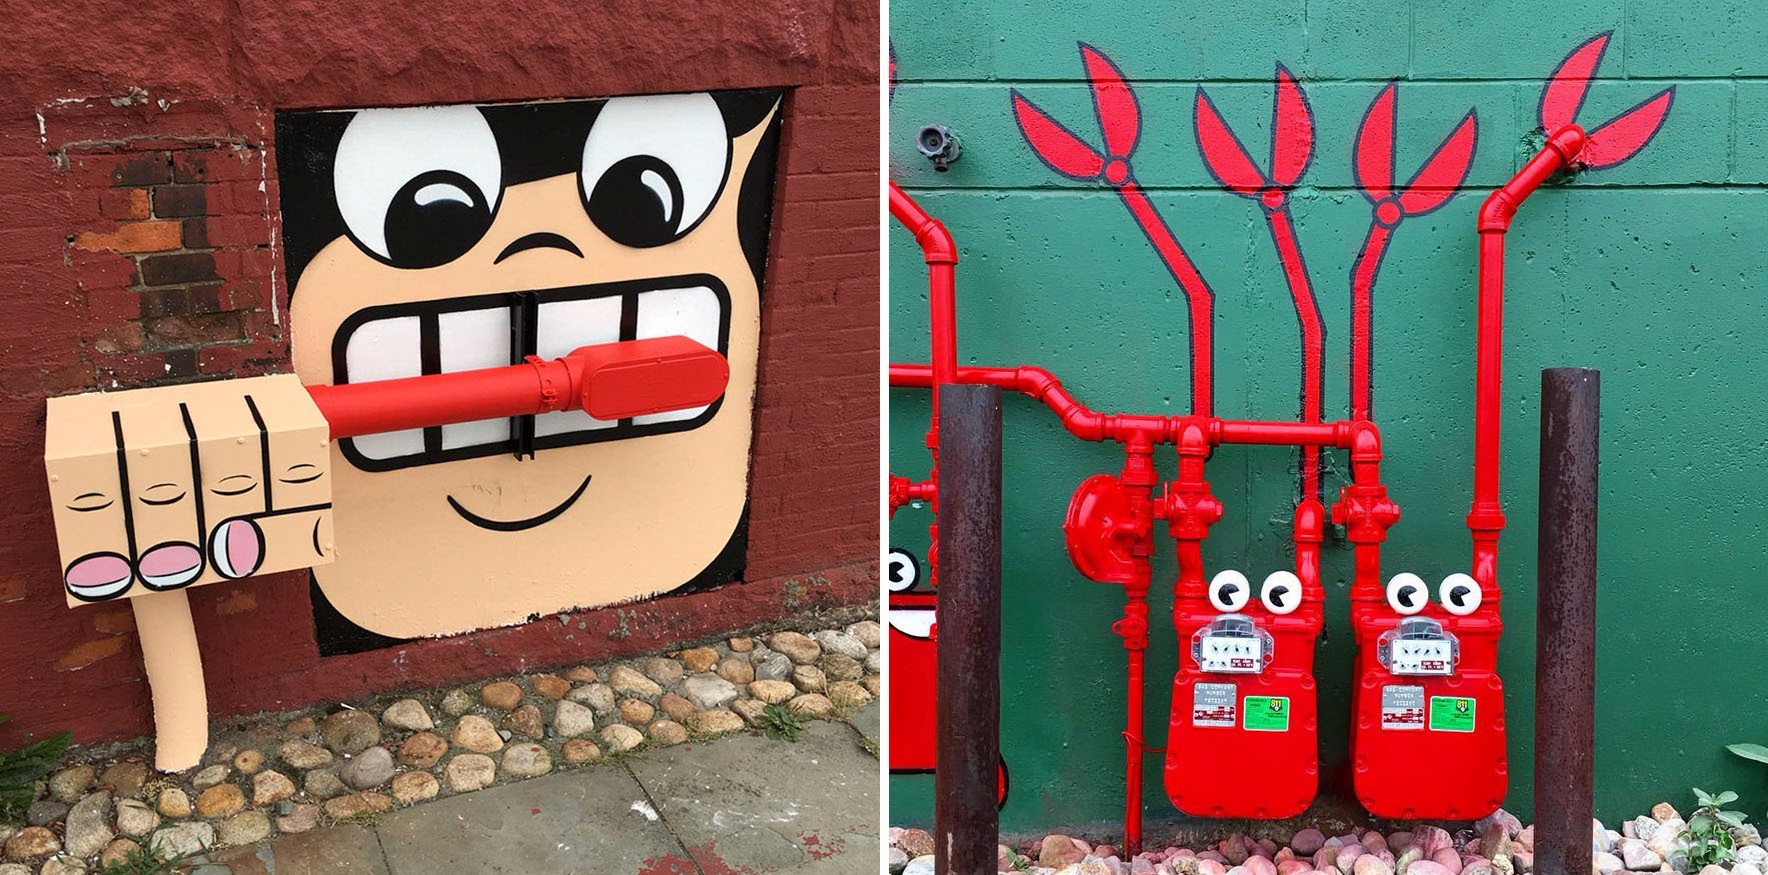 Genialny artysta uliczny grasuje po dzielnicach Nowego Jorku. Oby nie dał się złapać!